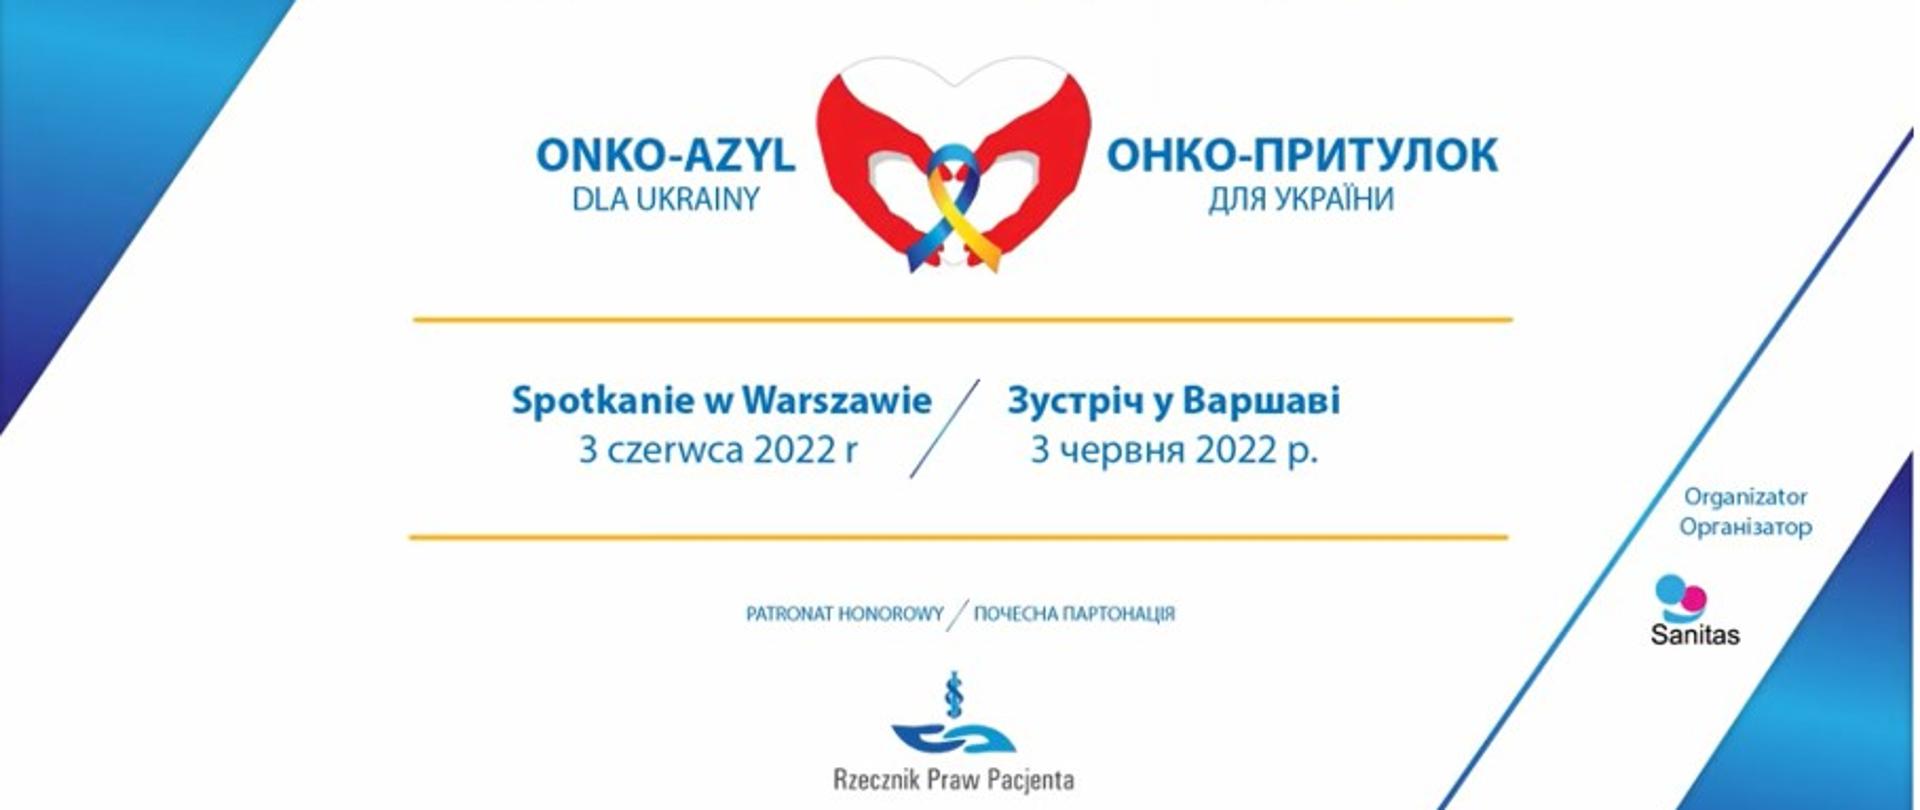 Onko-Azyl dla Ukrainy